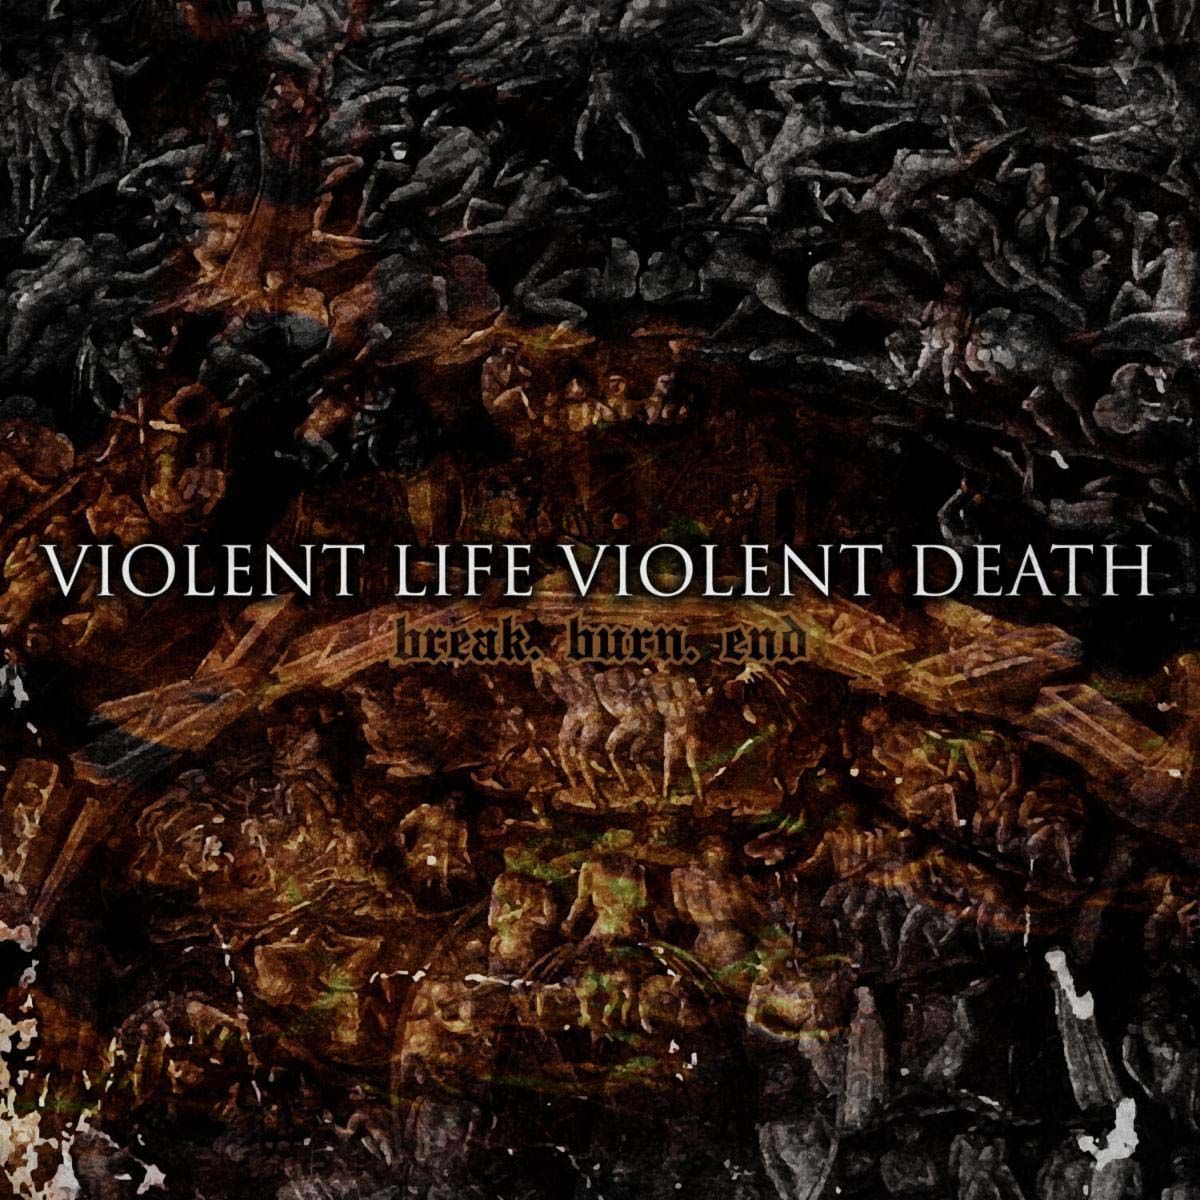 Violent Life Violent Death - Break.Burn.End